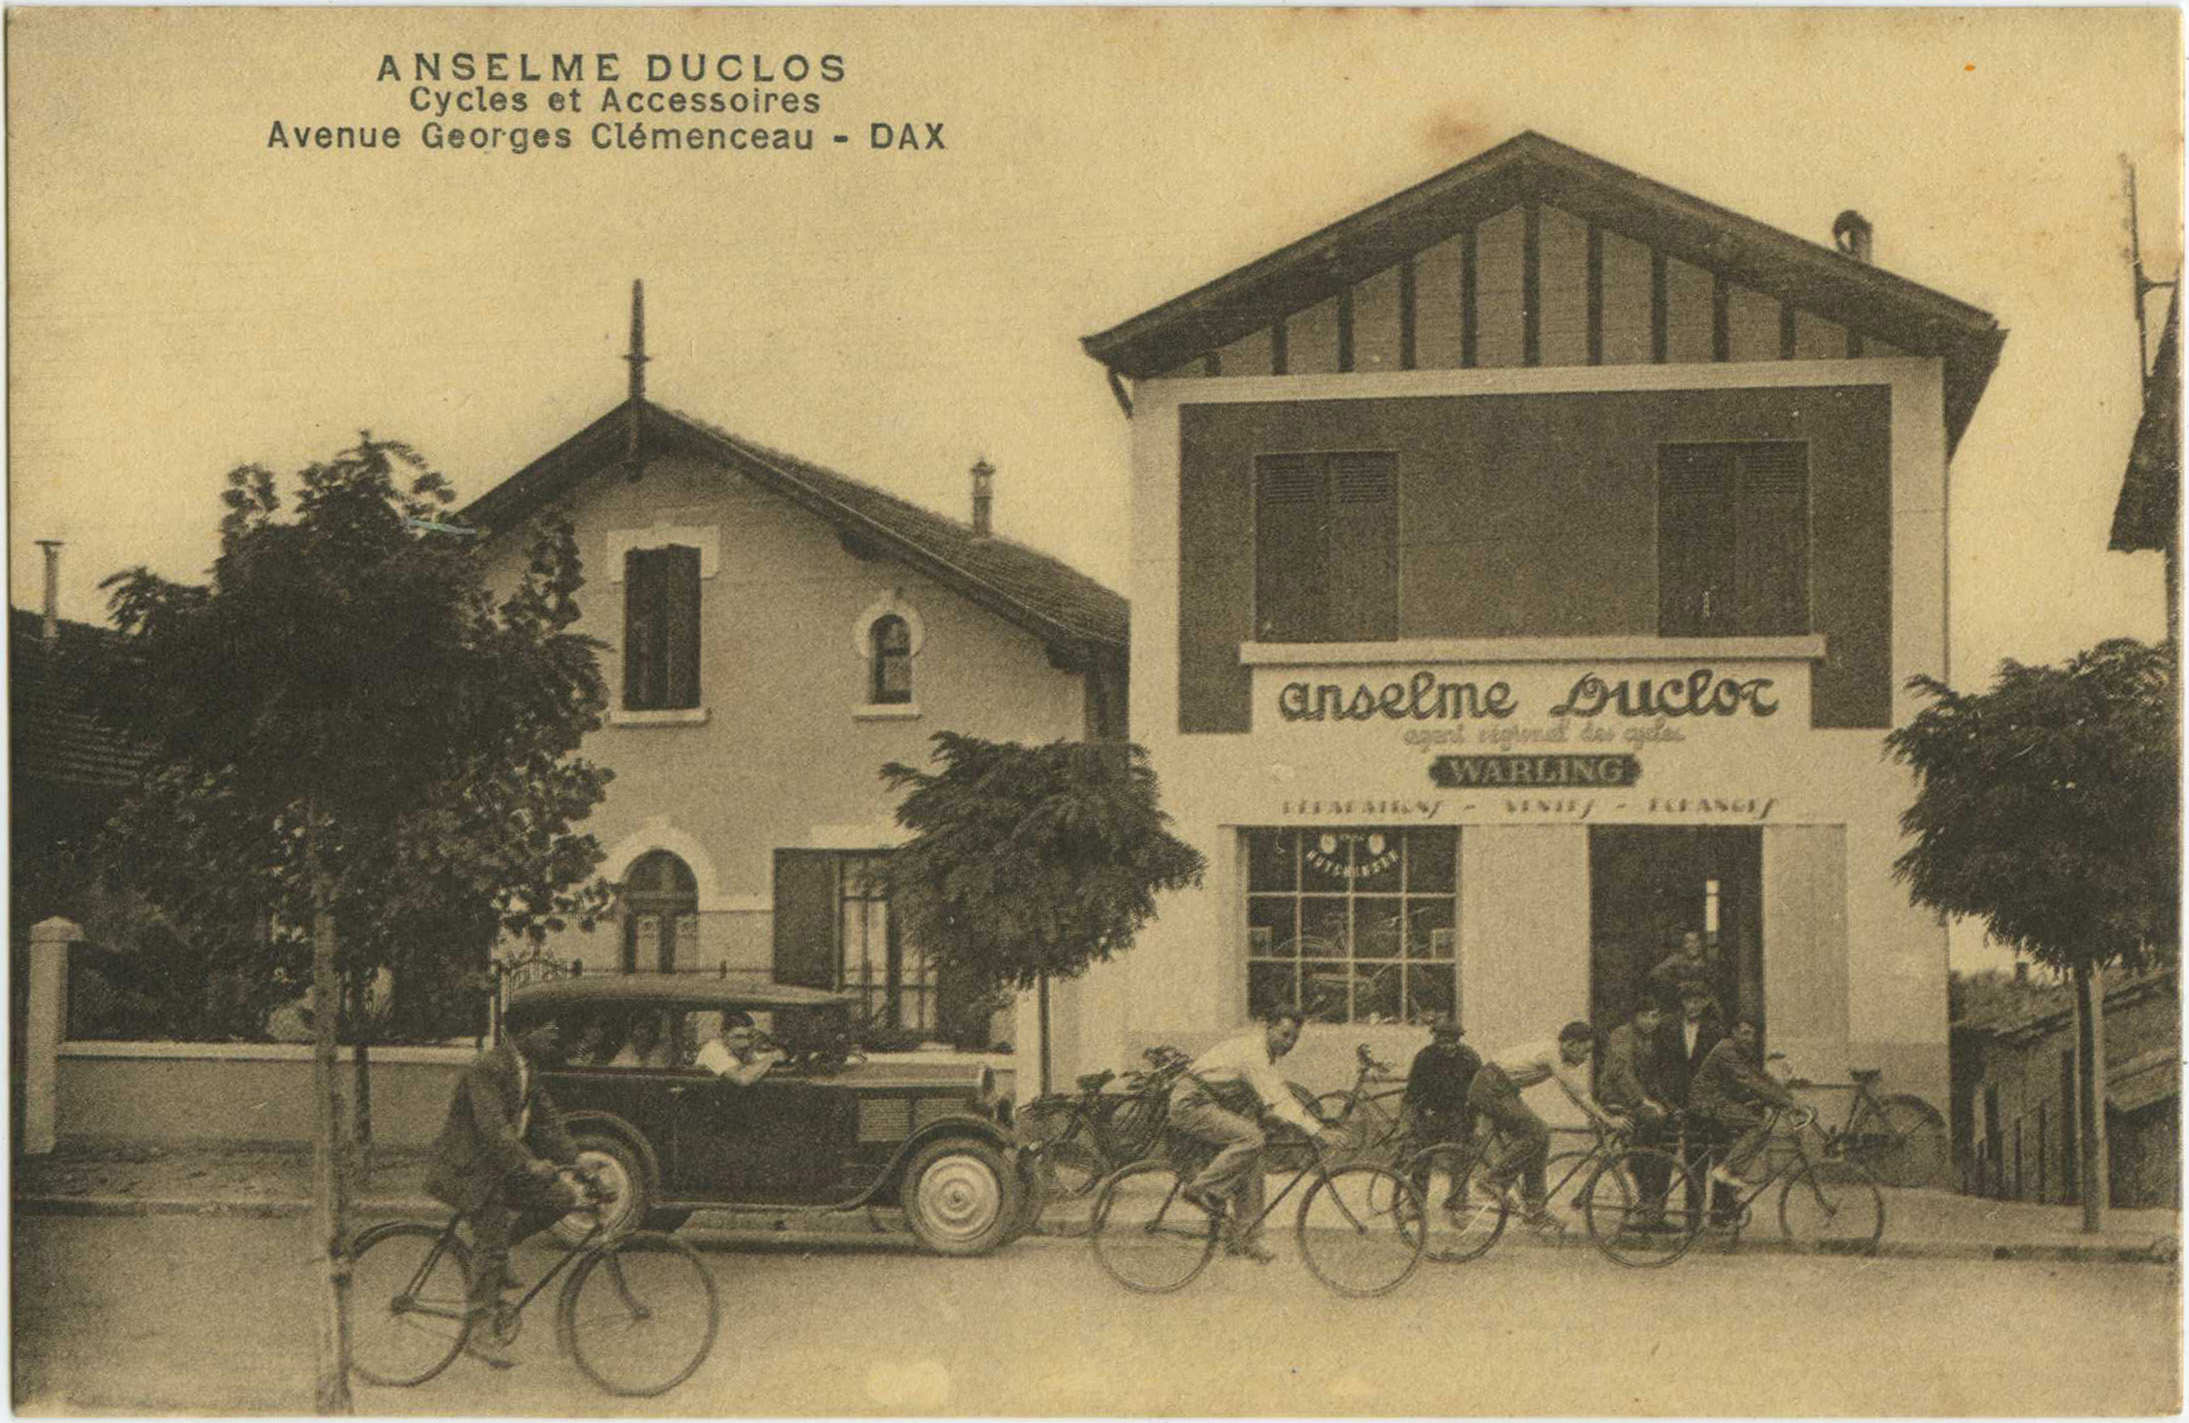 Dax - ANSELME DUCLOS - Cycles et Accessoires - Avenue Georges Clémenceau